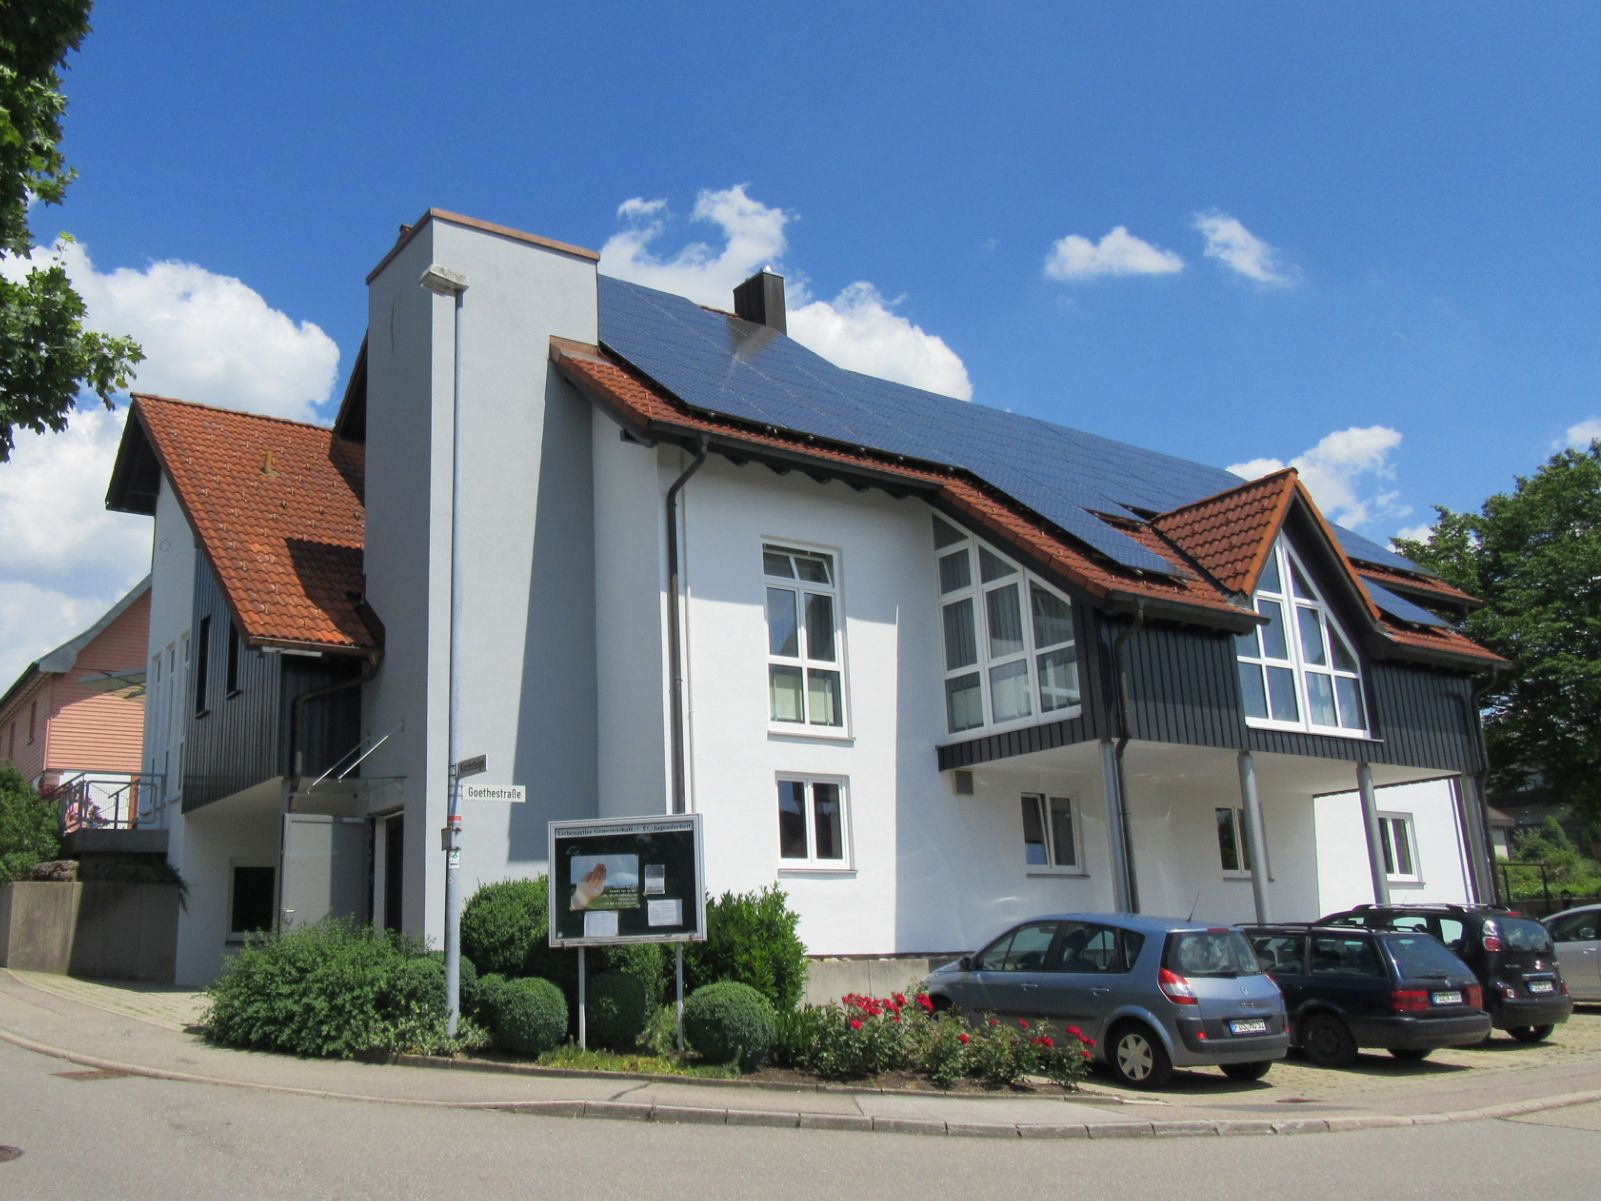  Bezirkszentrum in Schopfloch - das Bild wird mit einem Klick vergrößert 